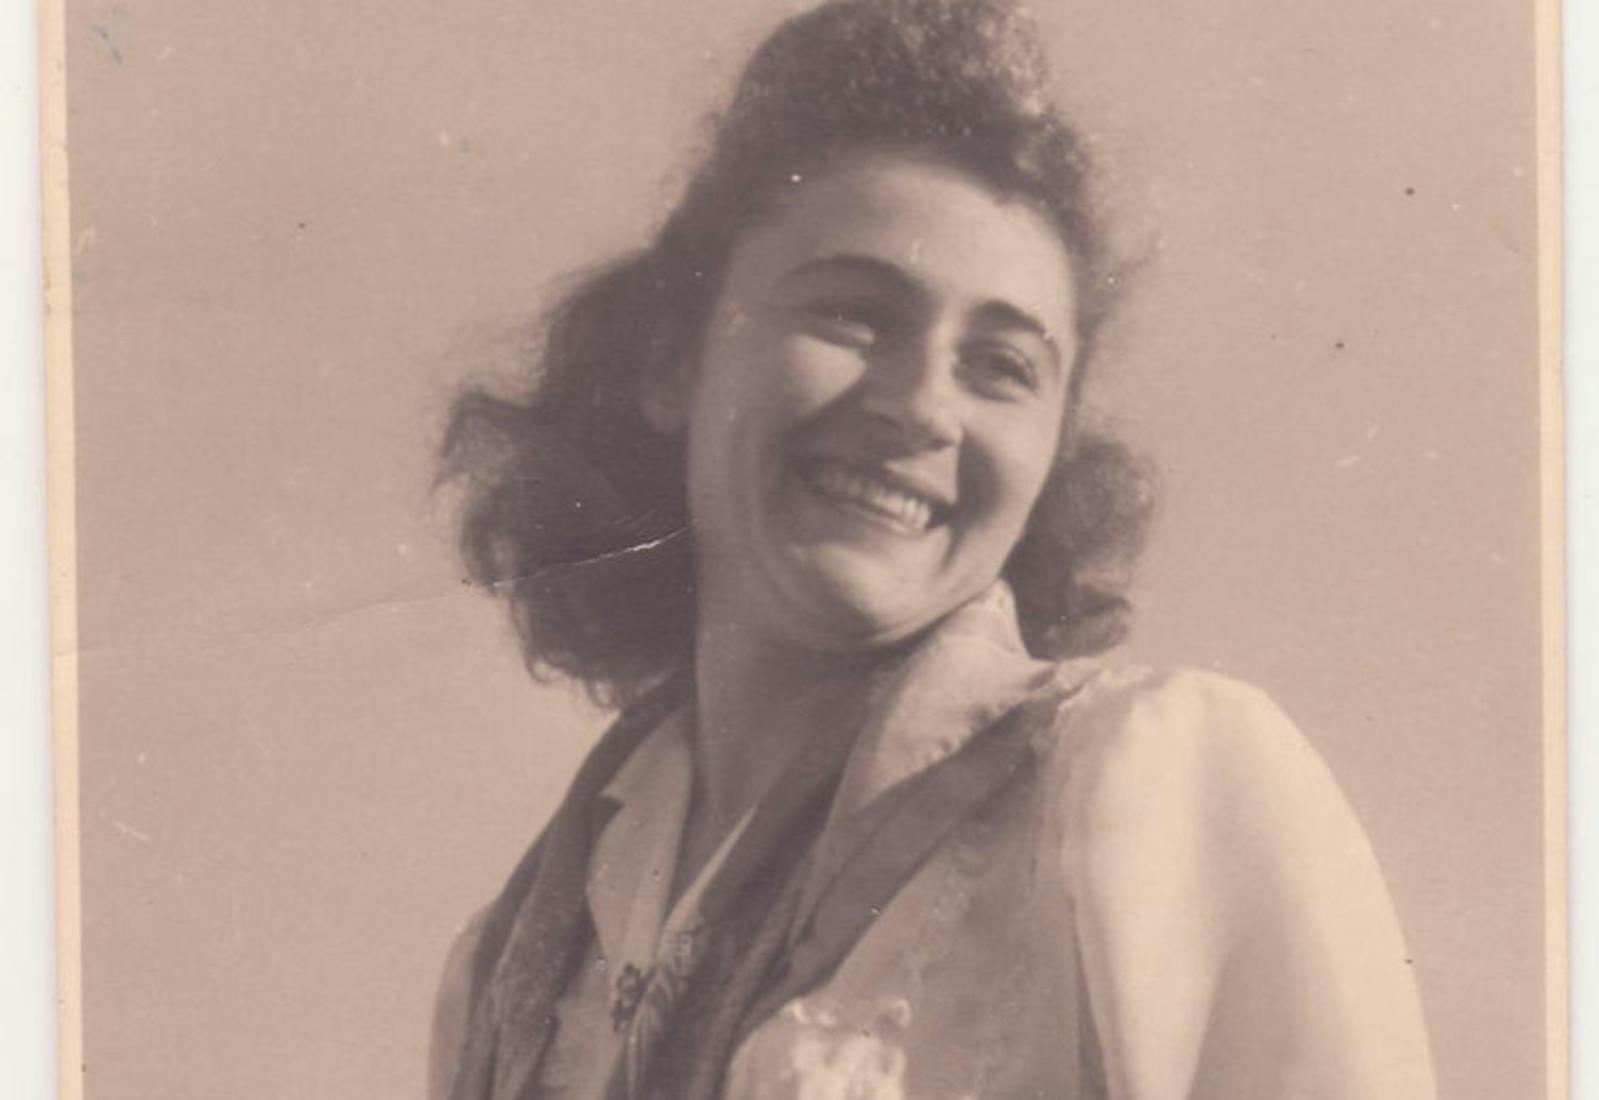 Hilda Dormont born in 1926, pictured here in Tel Aviv.